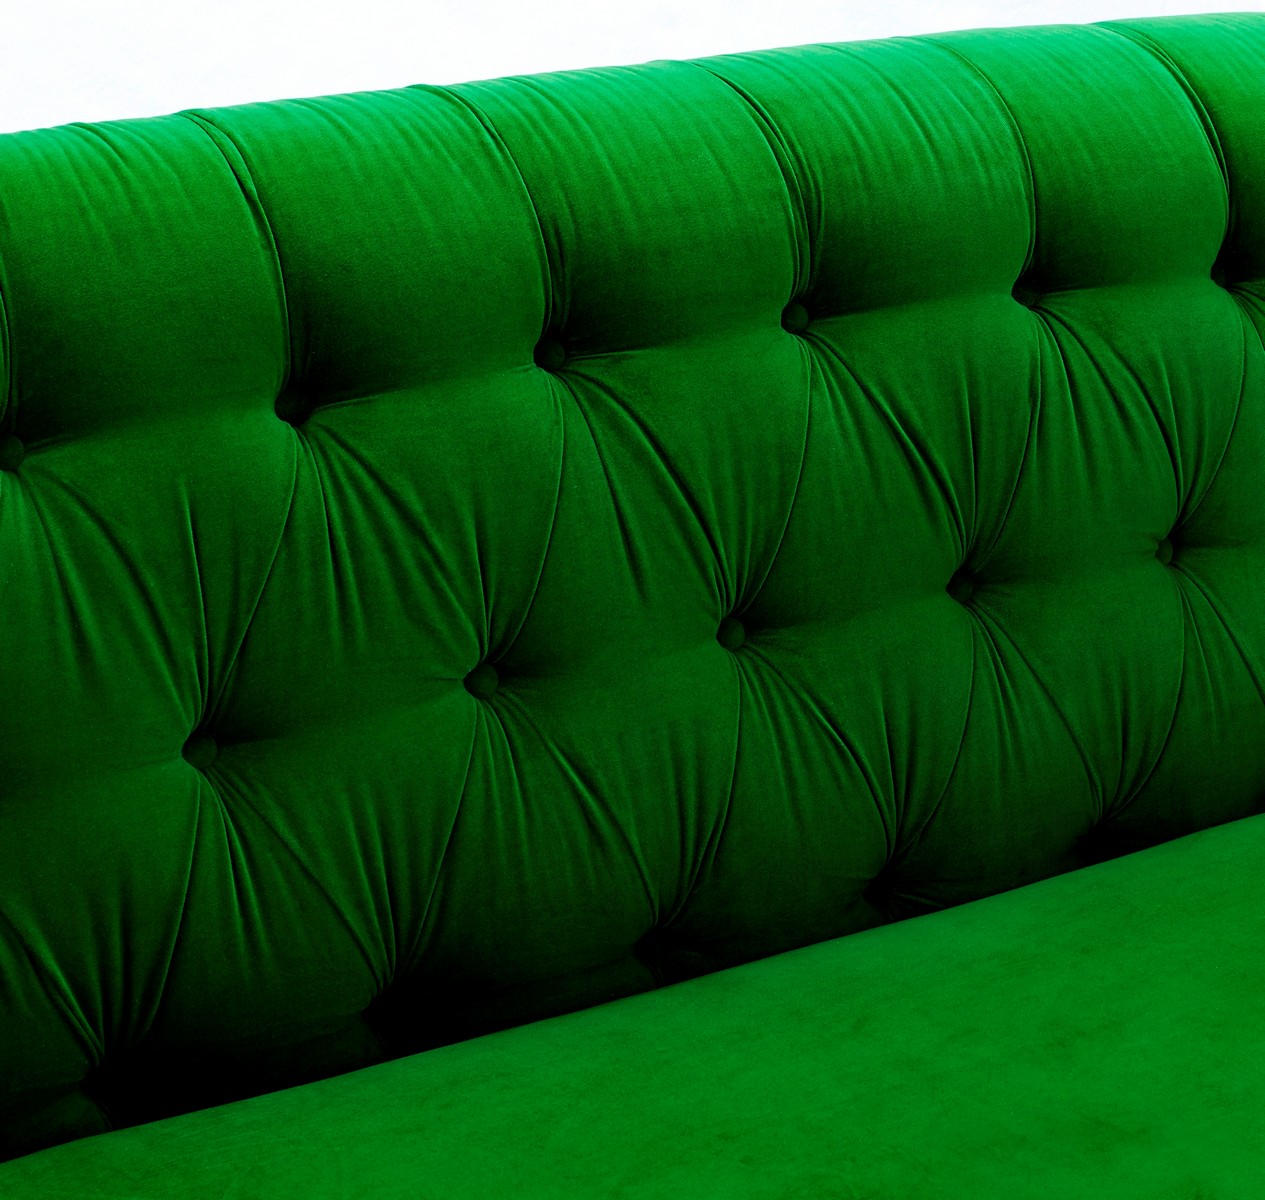 TOV Furniture Hanny Green Velvet Sofa